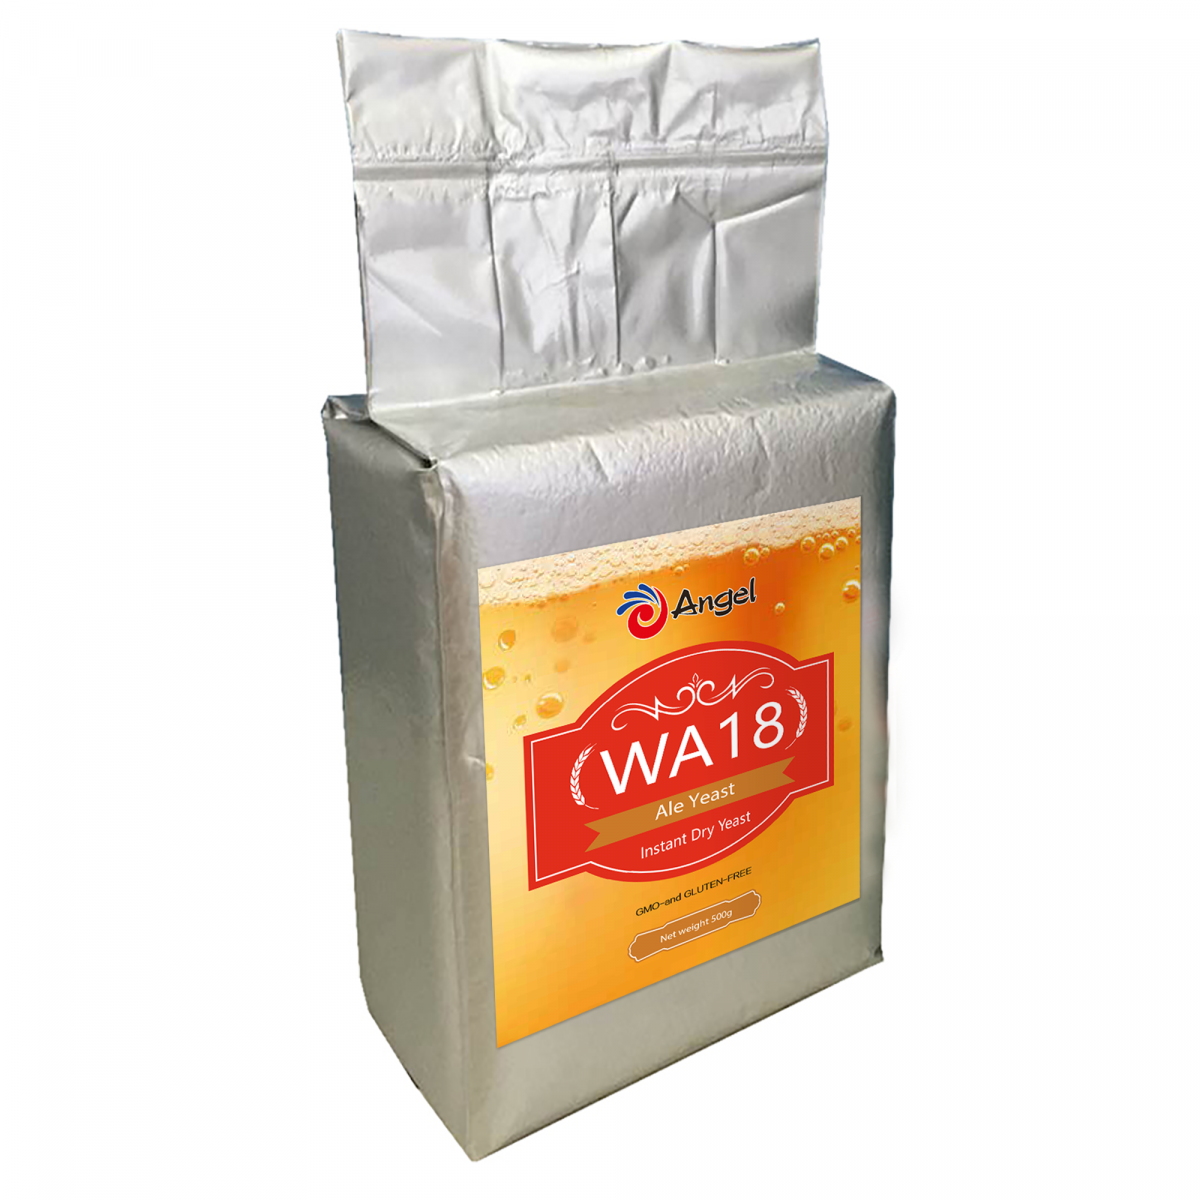 Angel dried brewing yeast WA18 500 g